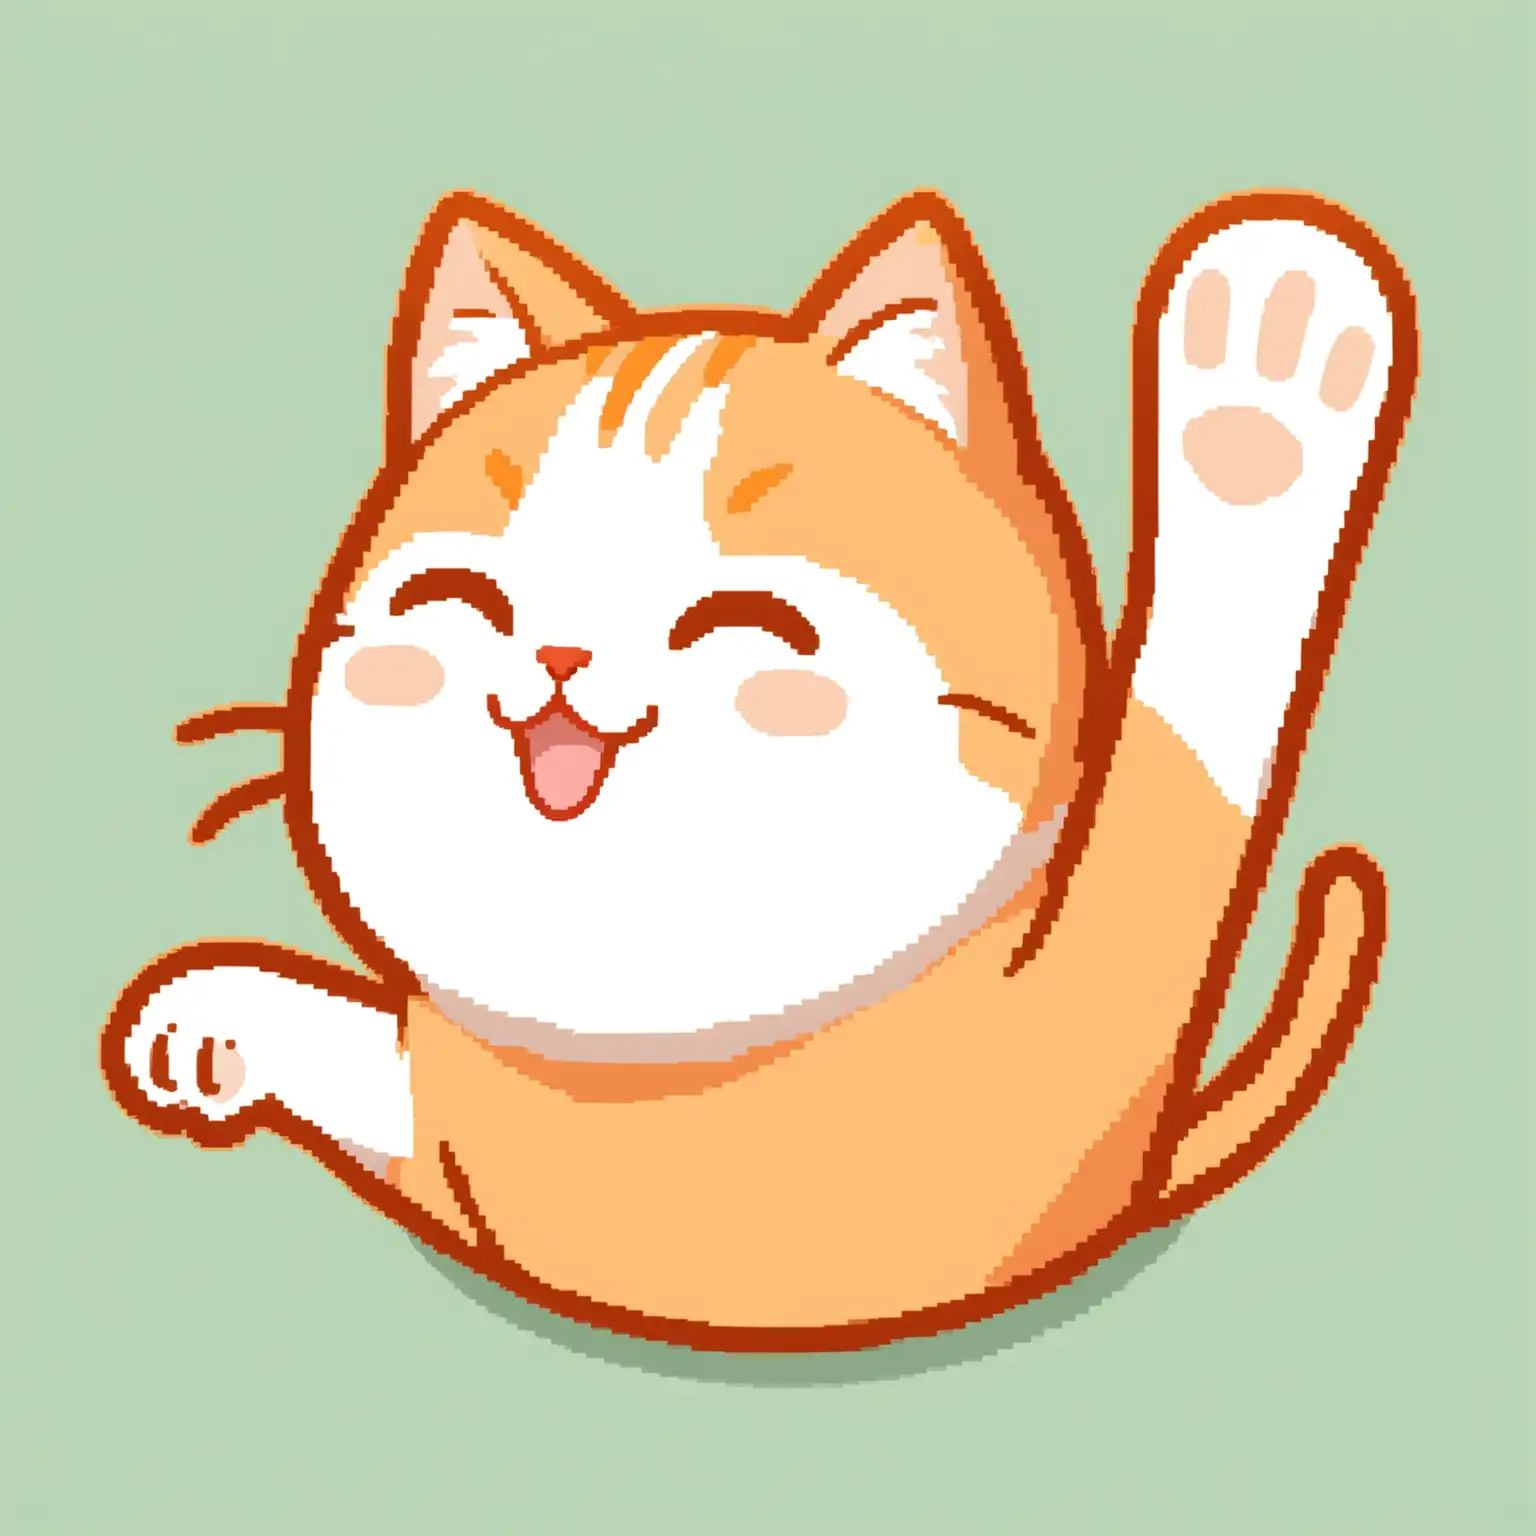 Orange and white cat waving. Emote style.